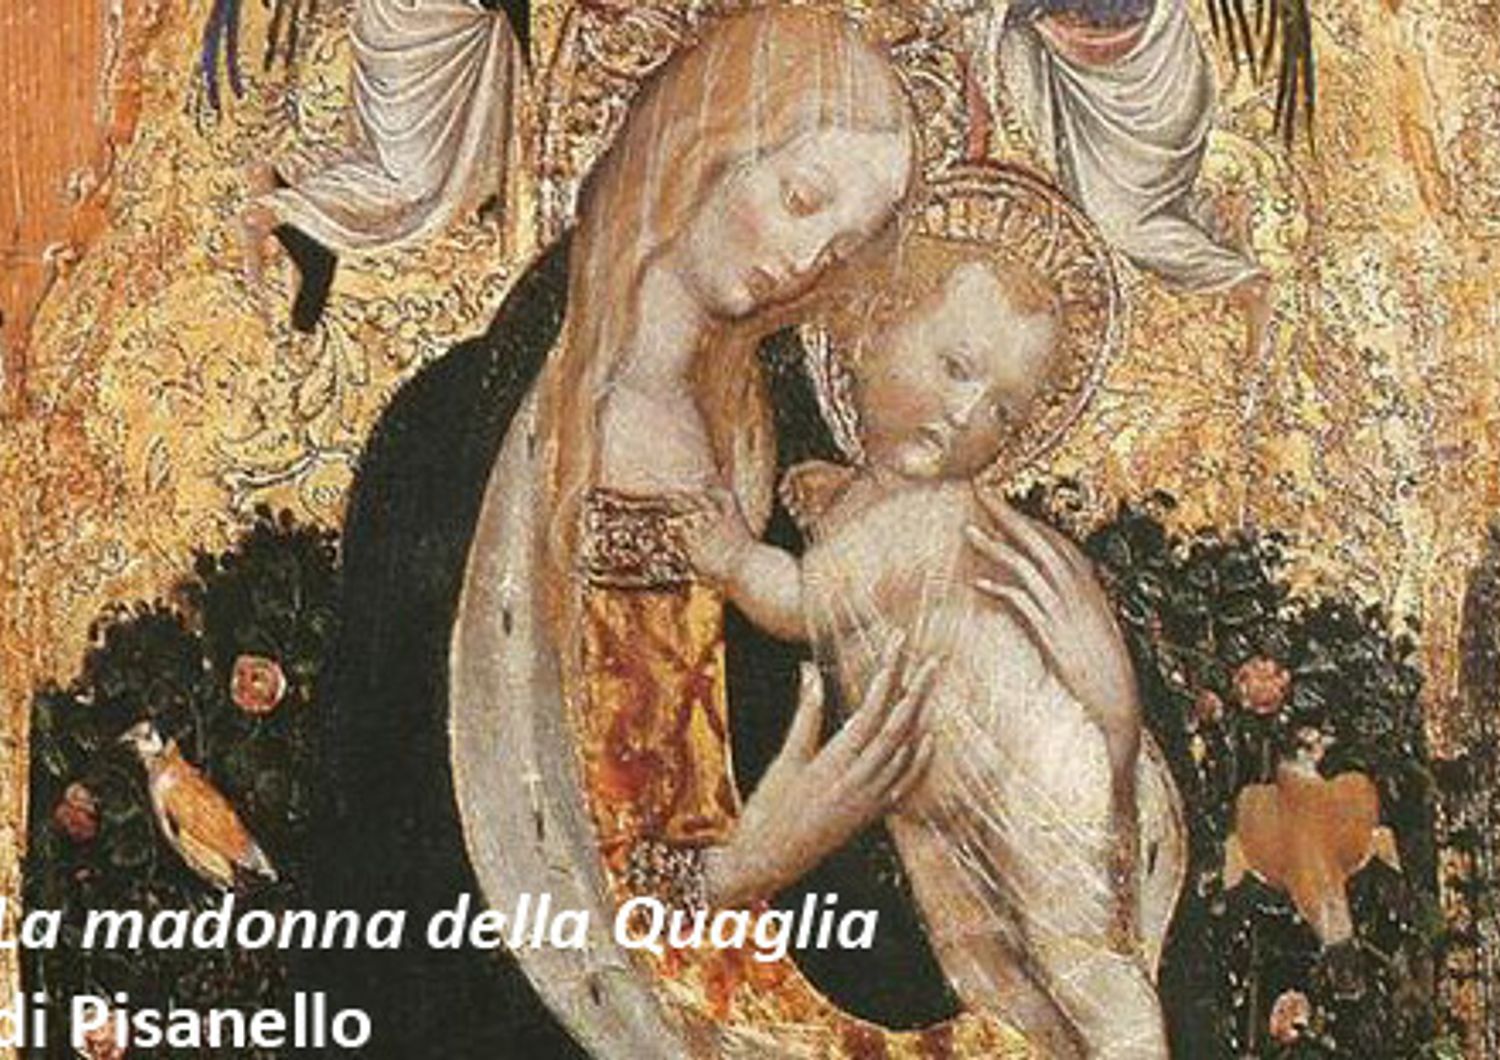 &nbsp;&nbsp;La madonna della Quaglia&nbsp;di Pisanello